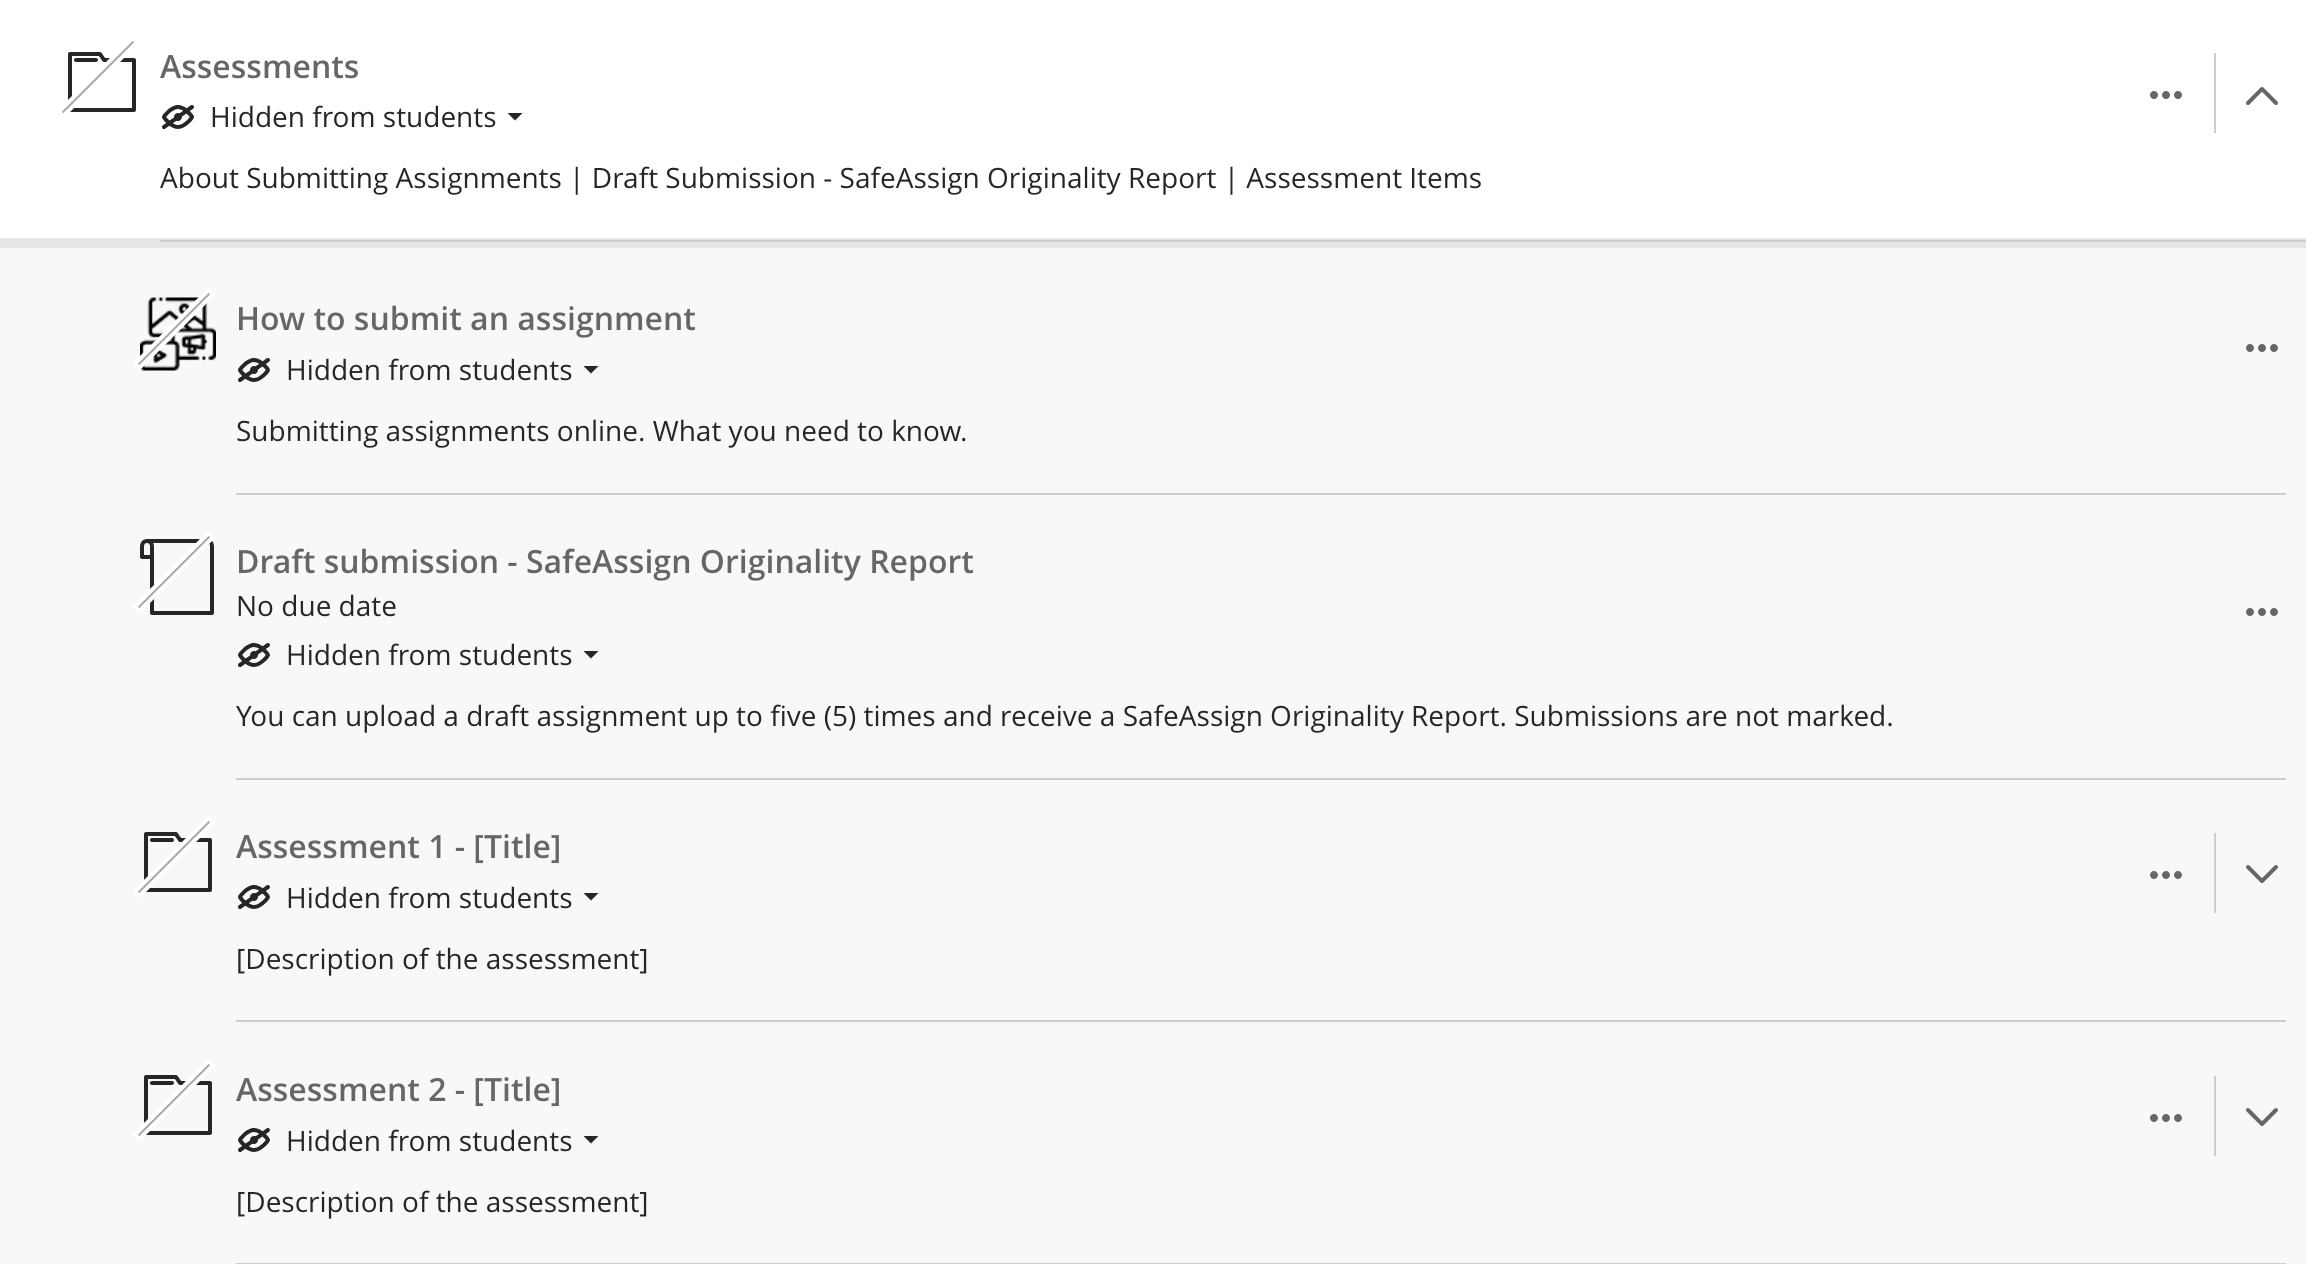 Screenshot of the templated assessment folder